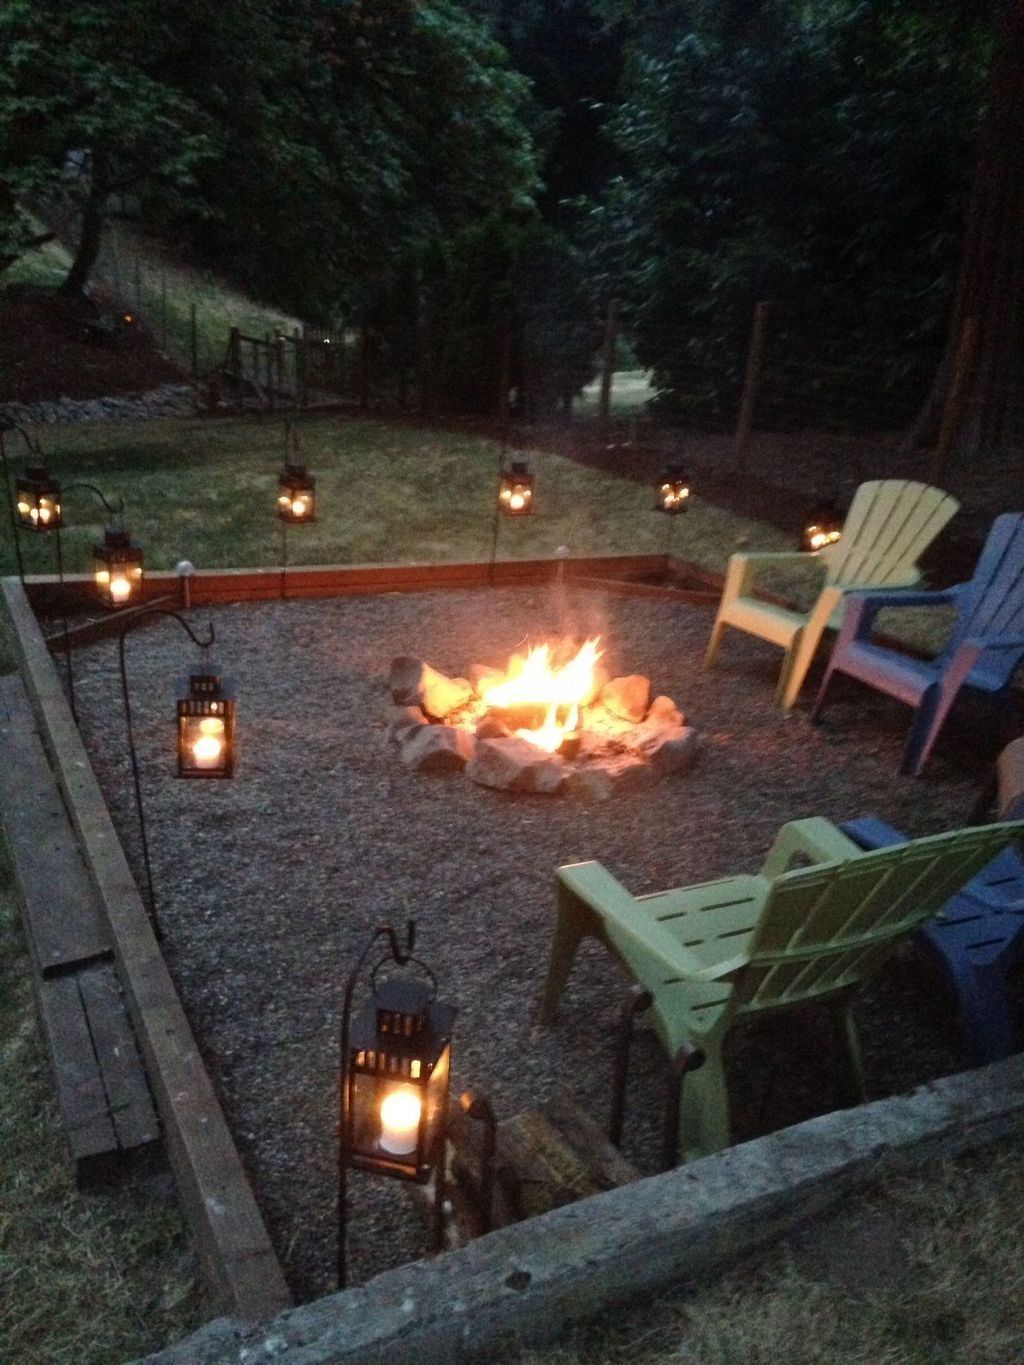 40 Amazing Backyard Fire Pit Ideas - 40 Amazing Backyard Fire Pit Ideas -   14 diy Outdoor fire pit ideas